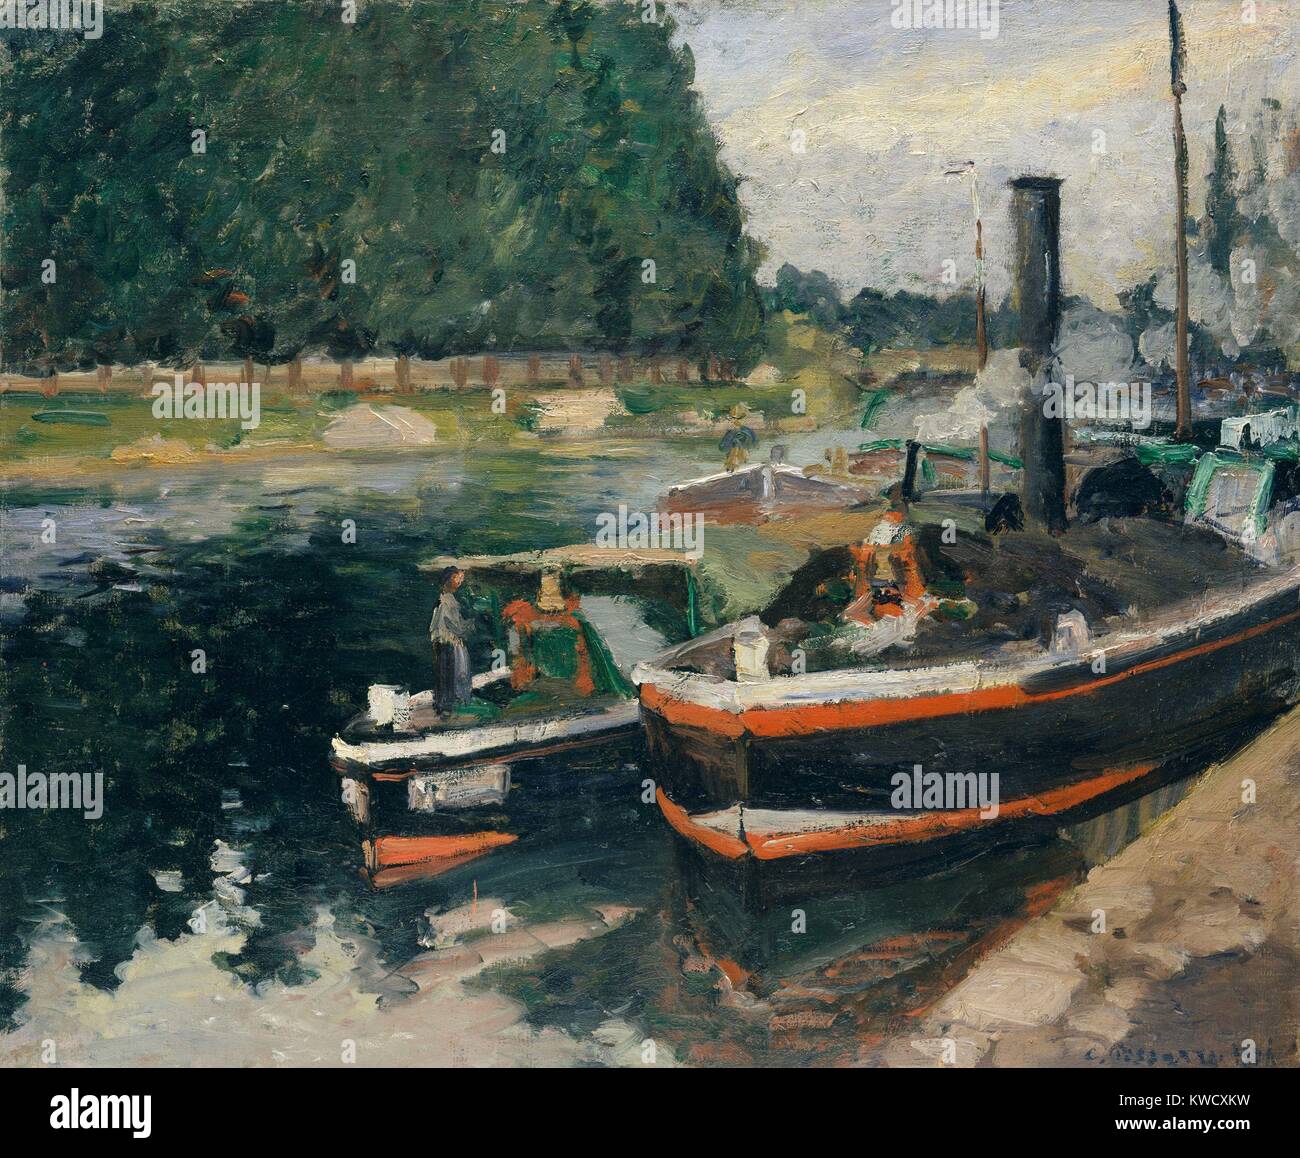 Des Barges à Pontoise, par Camille Pissarro, 1876, la peinture  impressionniste français, huile sur toile. Les barges marchandises  transportées sur l'Oise au port de Pontoise, où l'artiste vivait (BSLOC  2017 3 55